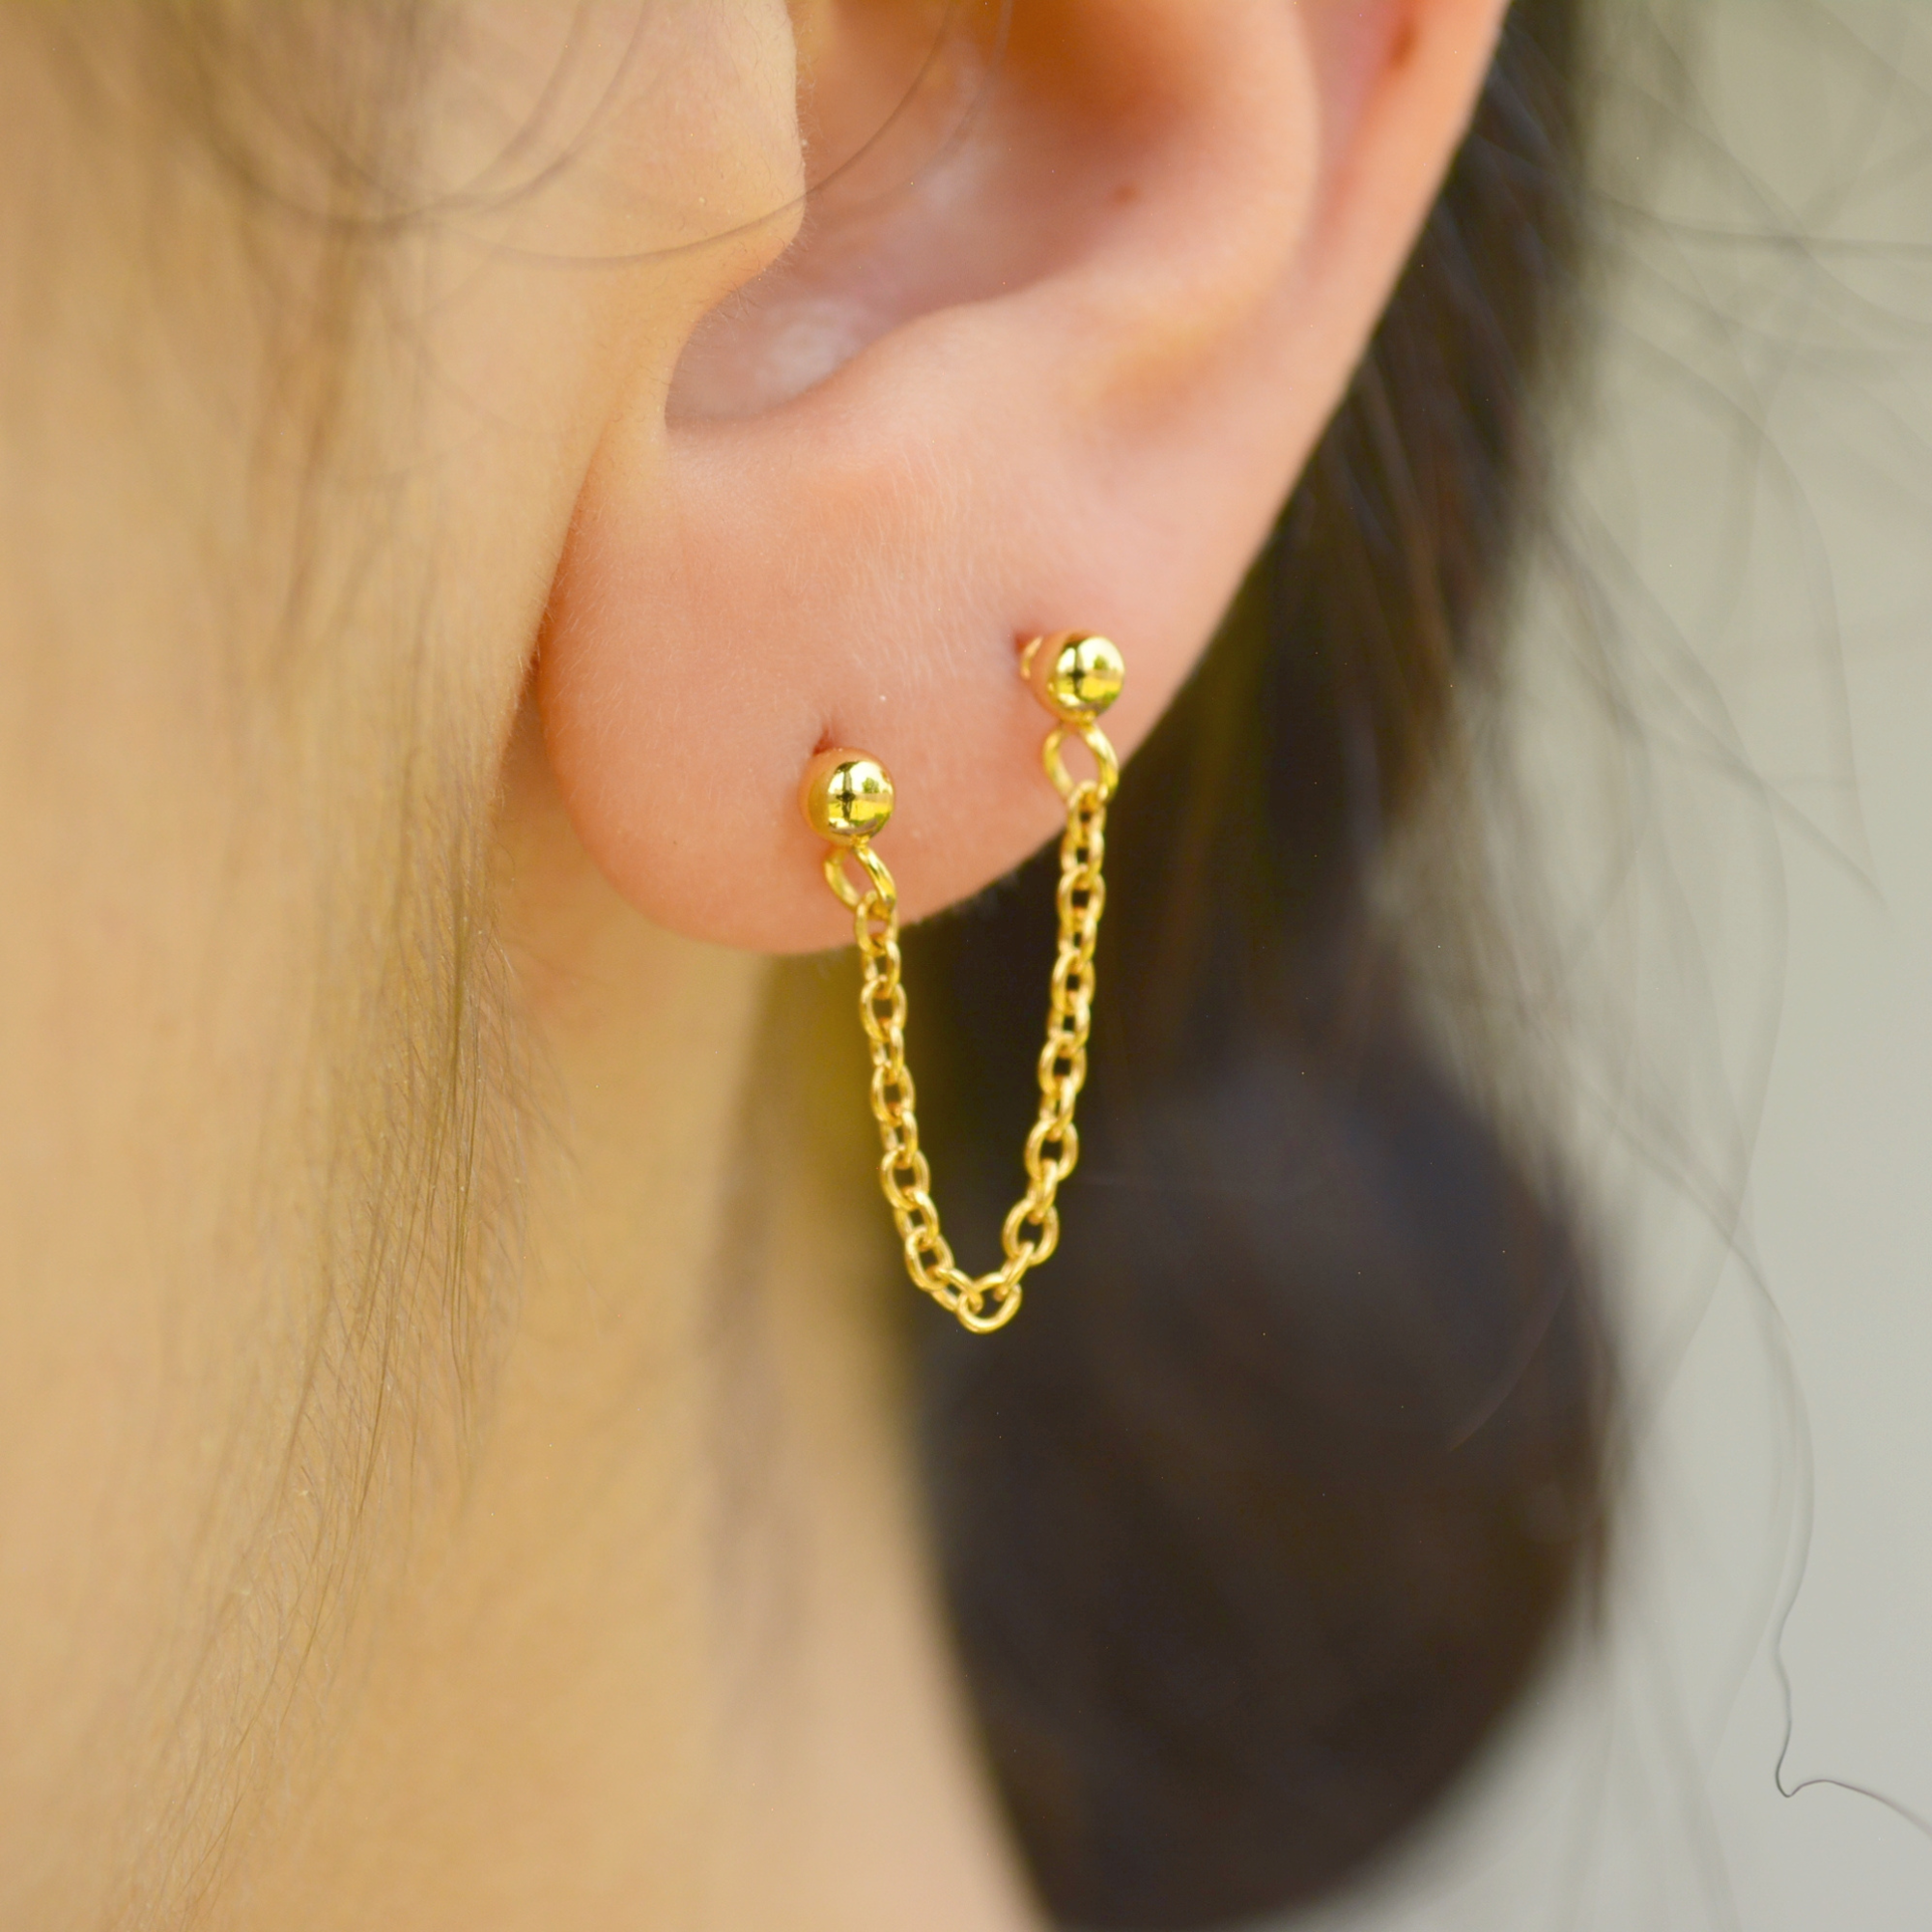 Double Piercing Earrings,